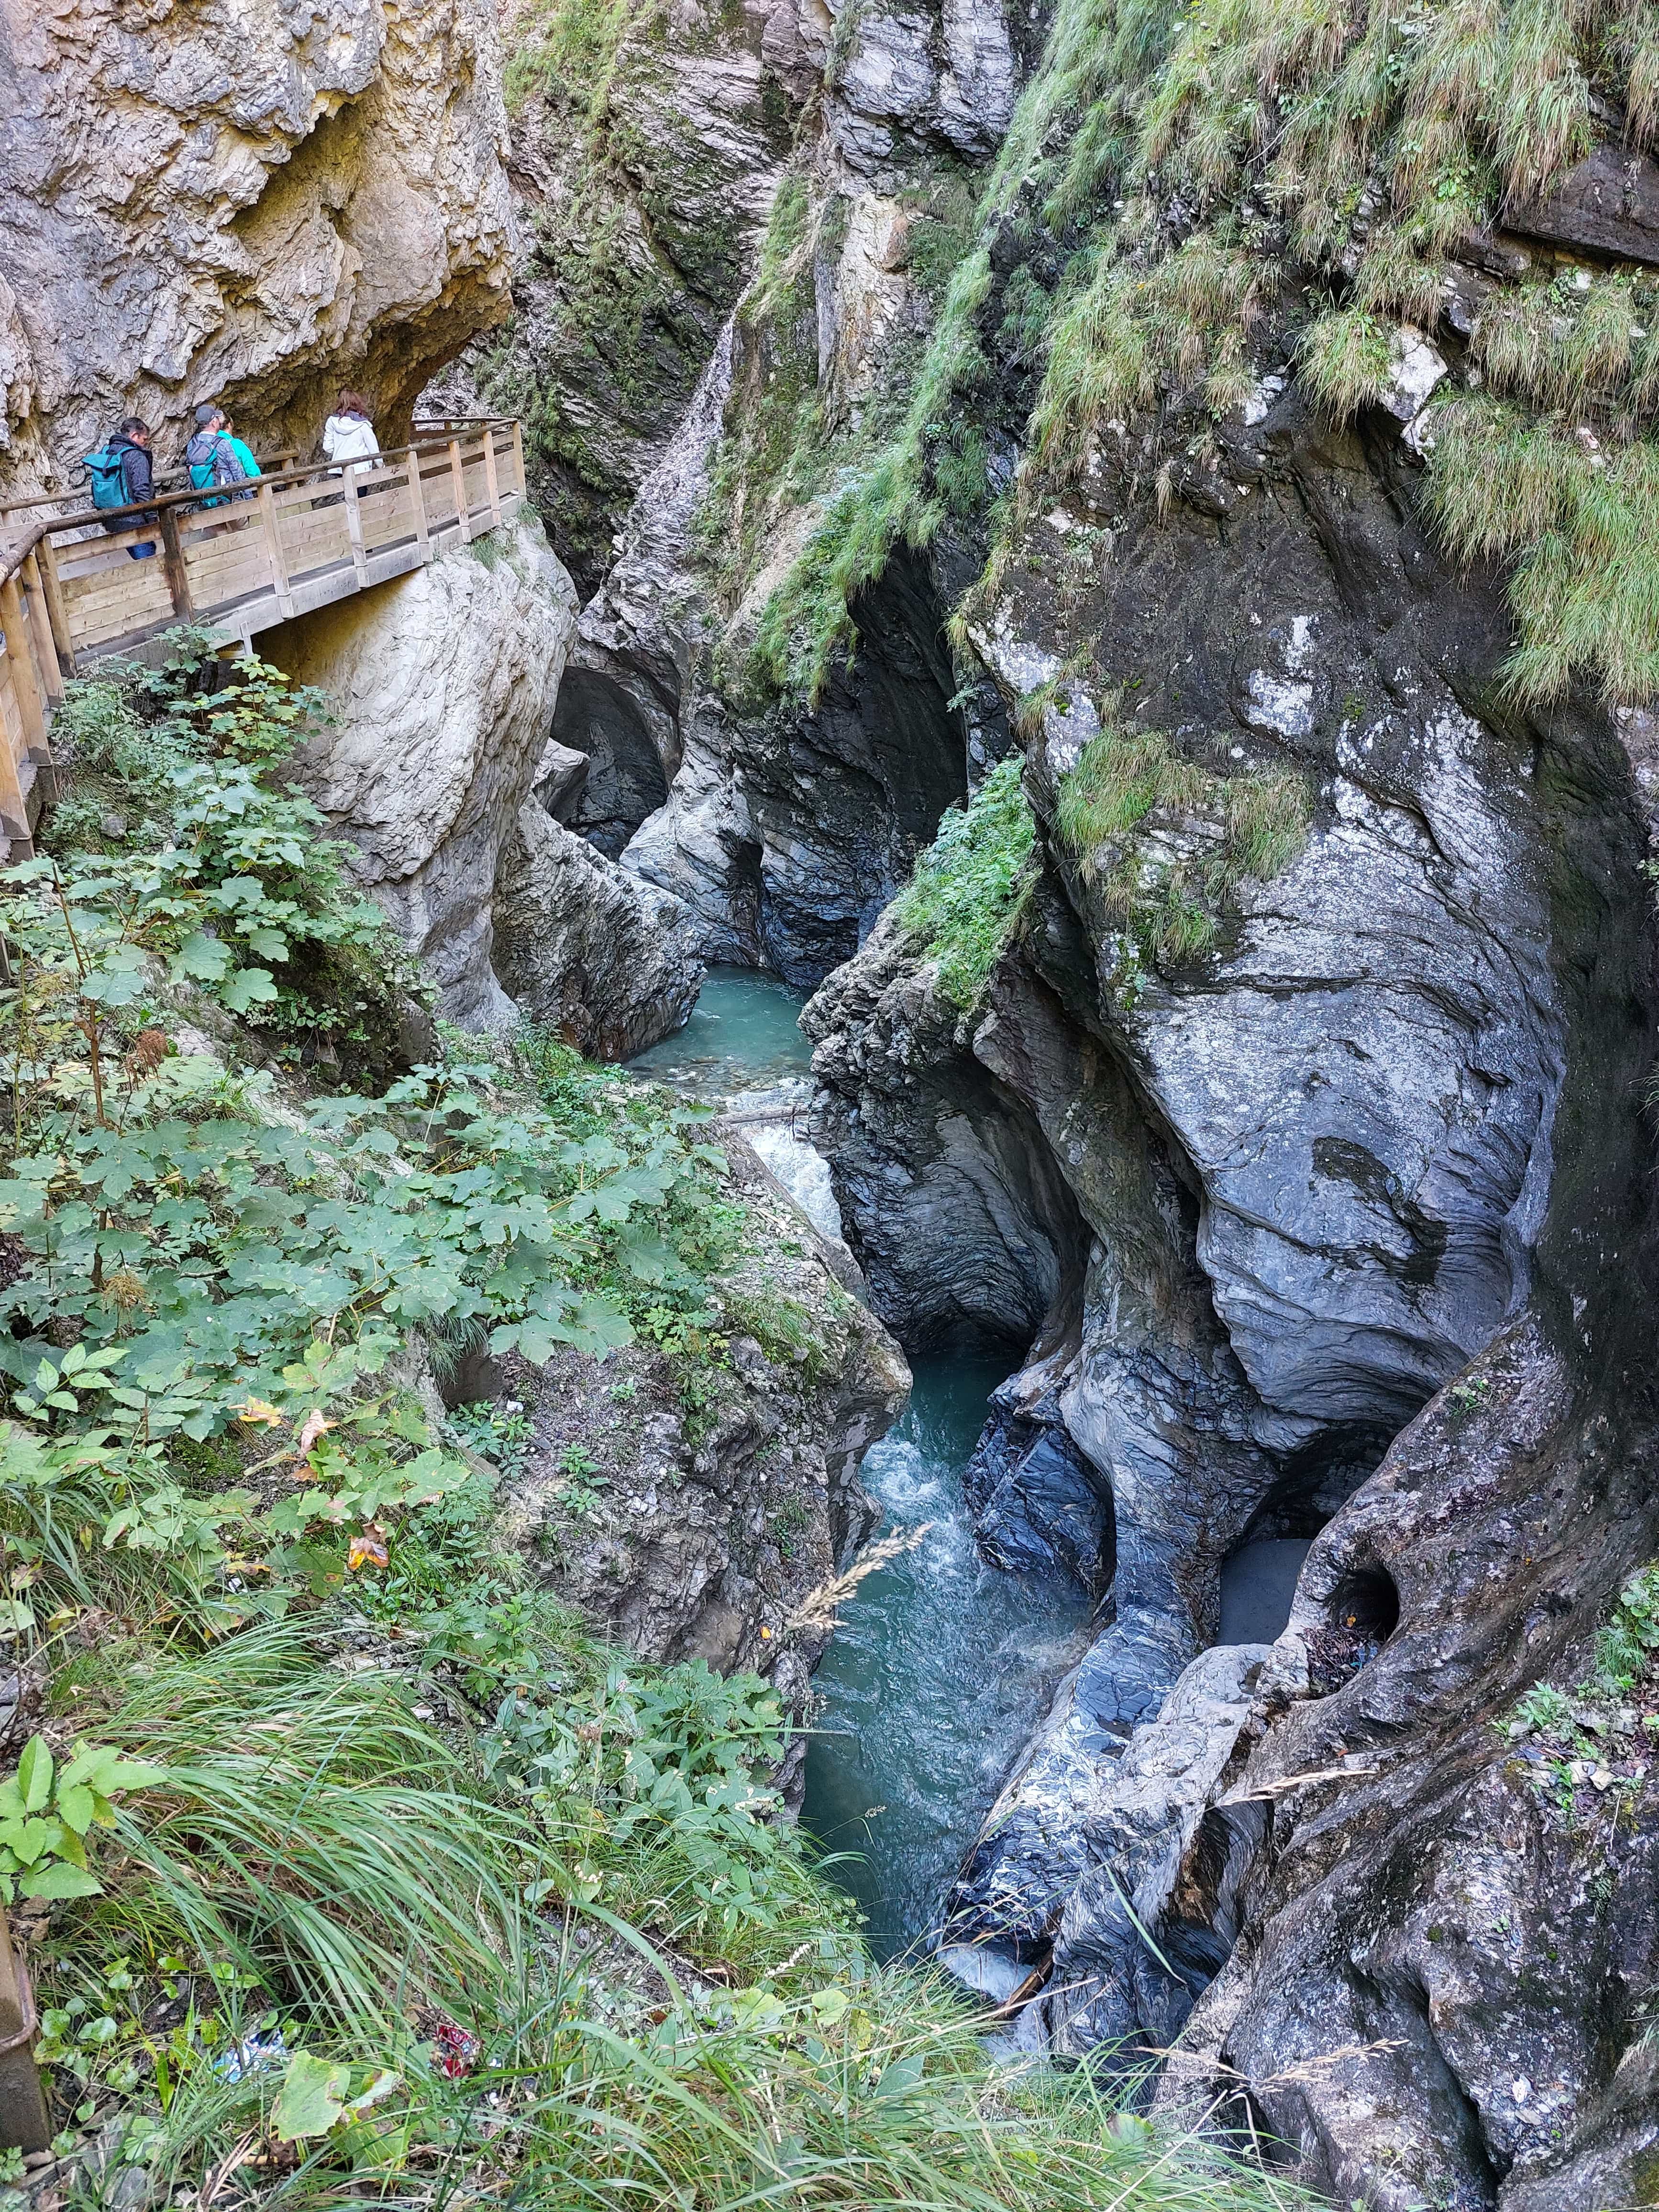 Liechtensteinklamm Gorge